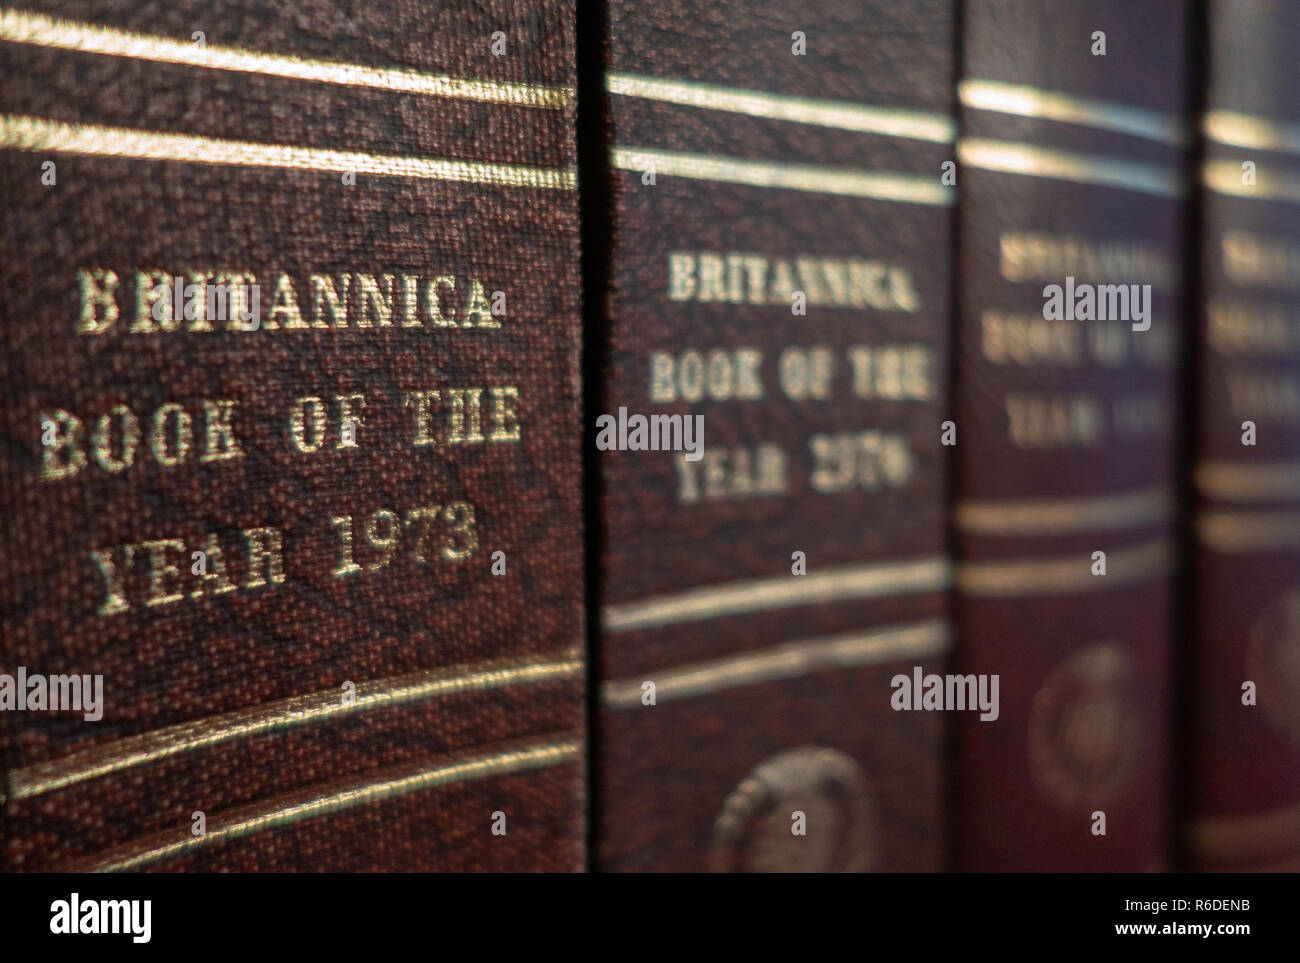 Satz von Britannica Buch des Jahres ist eine bebilderte Enzyklopädie auf einem Regal in einem englischen Haus Stockfoto